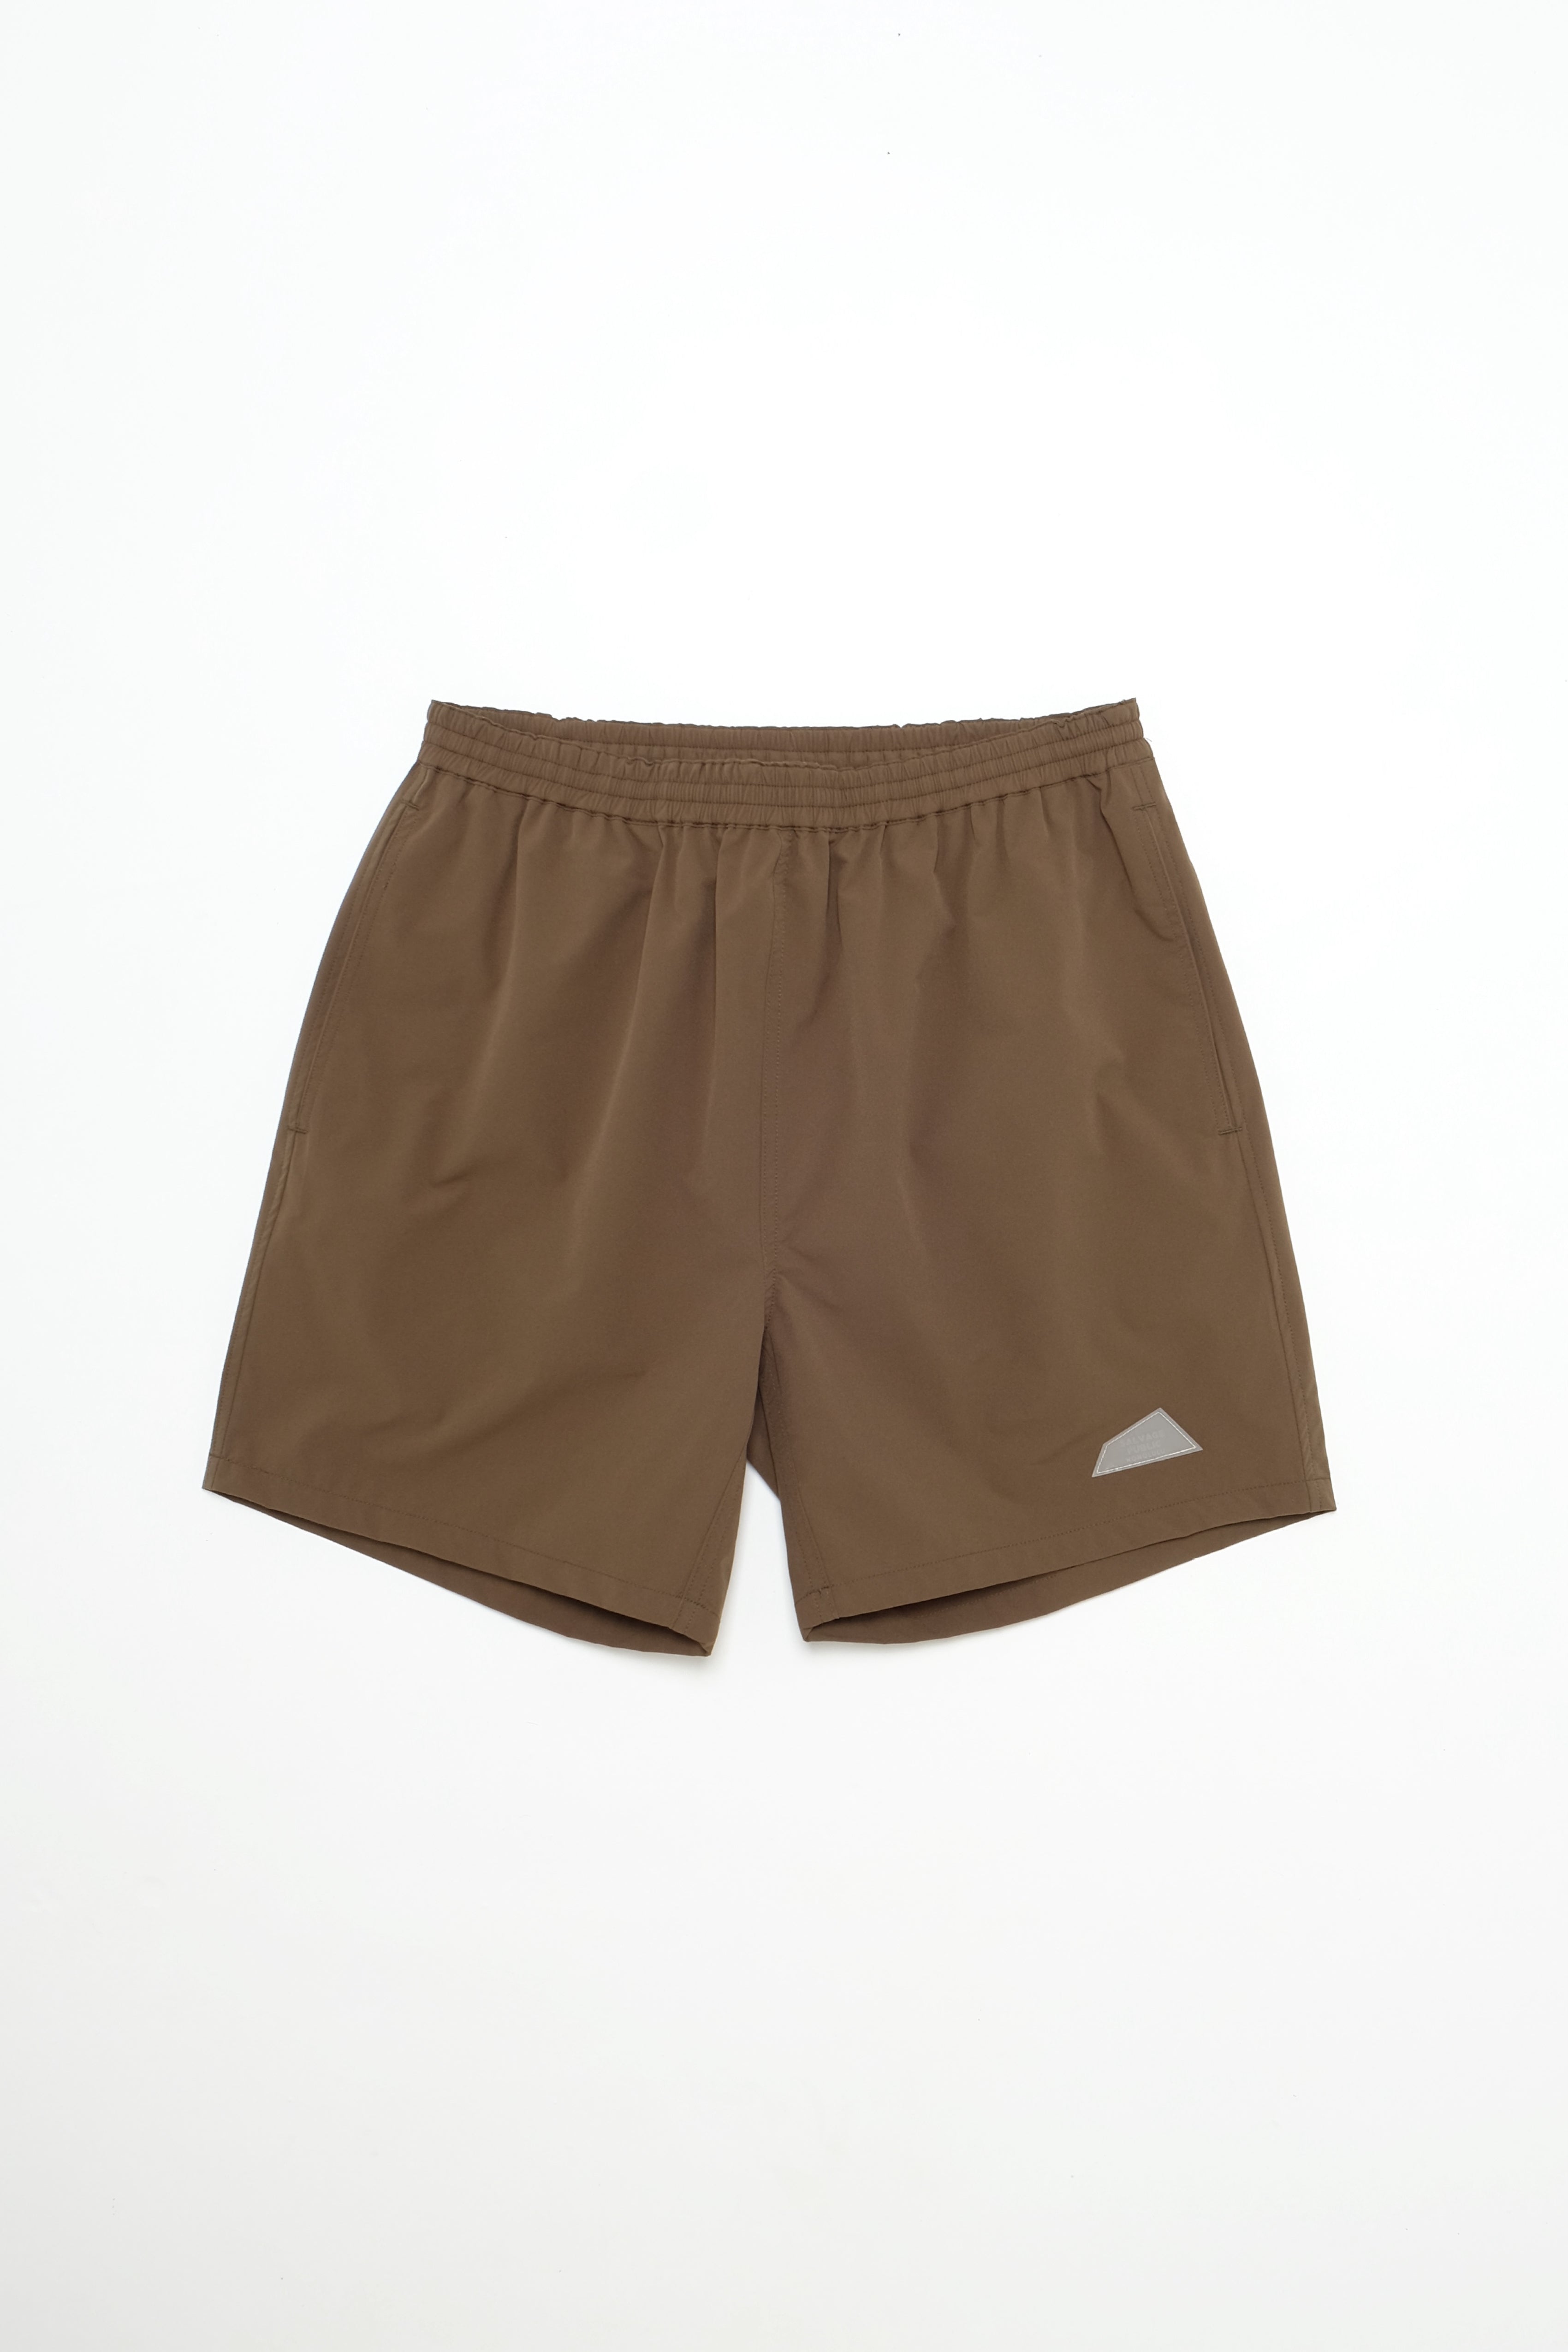 Shorts - Lanakila Athletic - Olive